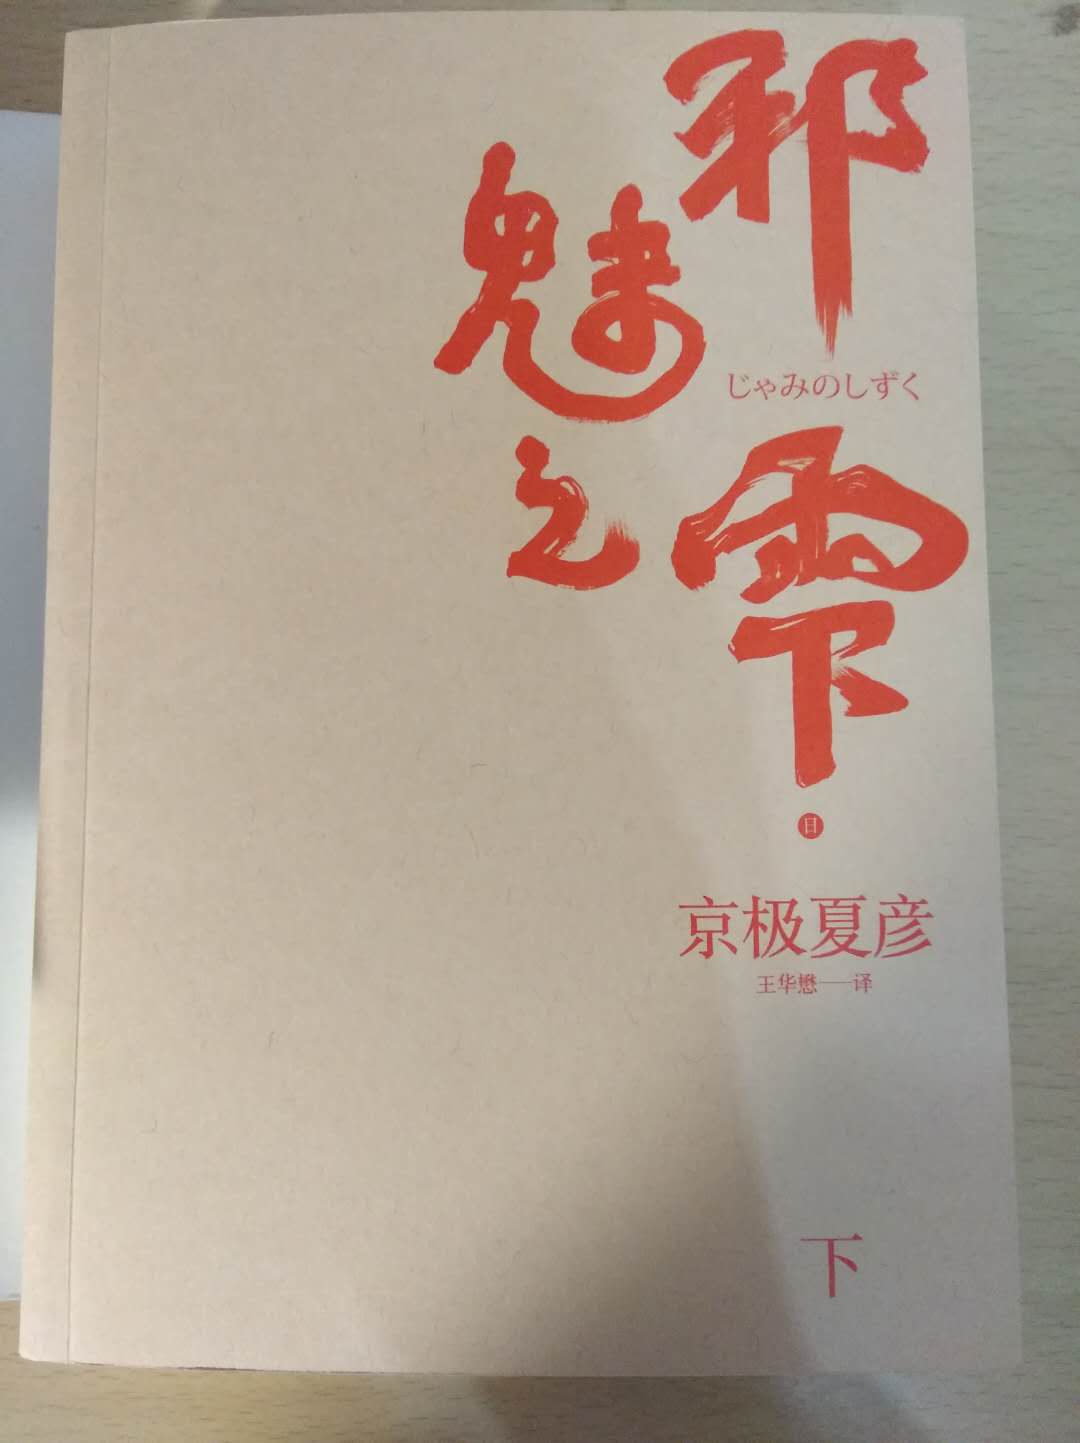 邪魅之雫（na第三声），雫，下雨的意思，日本汉字。这是京极的百鬼系列中的一部。